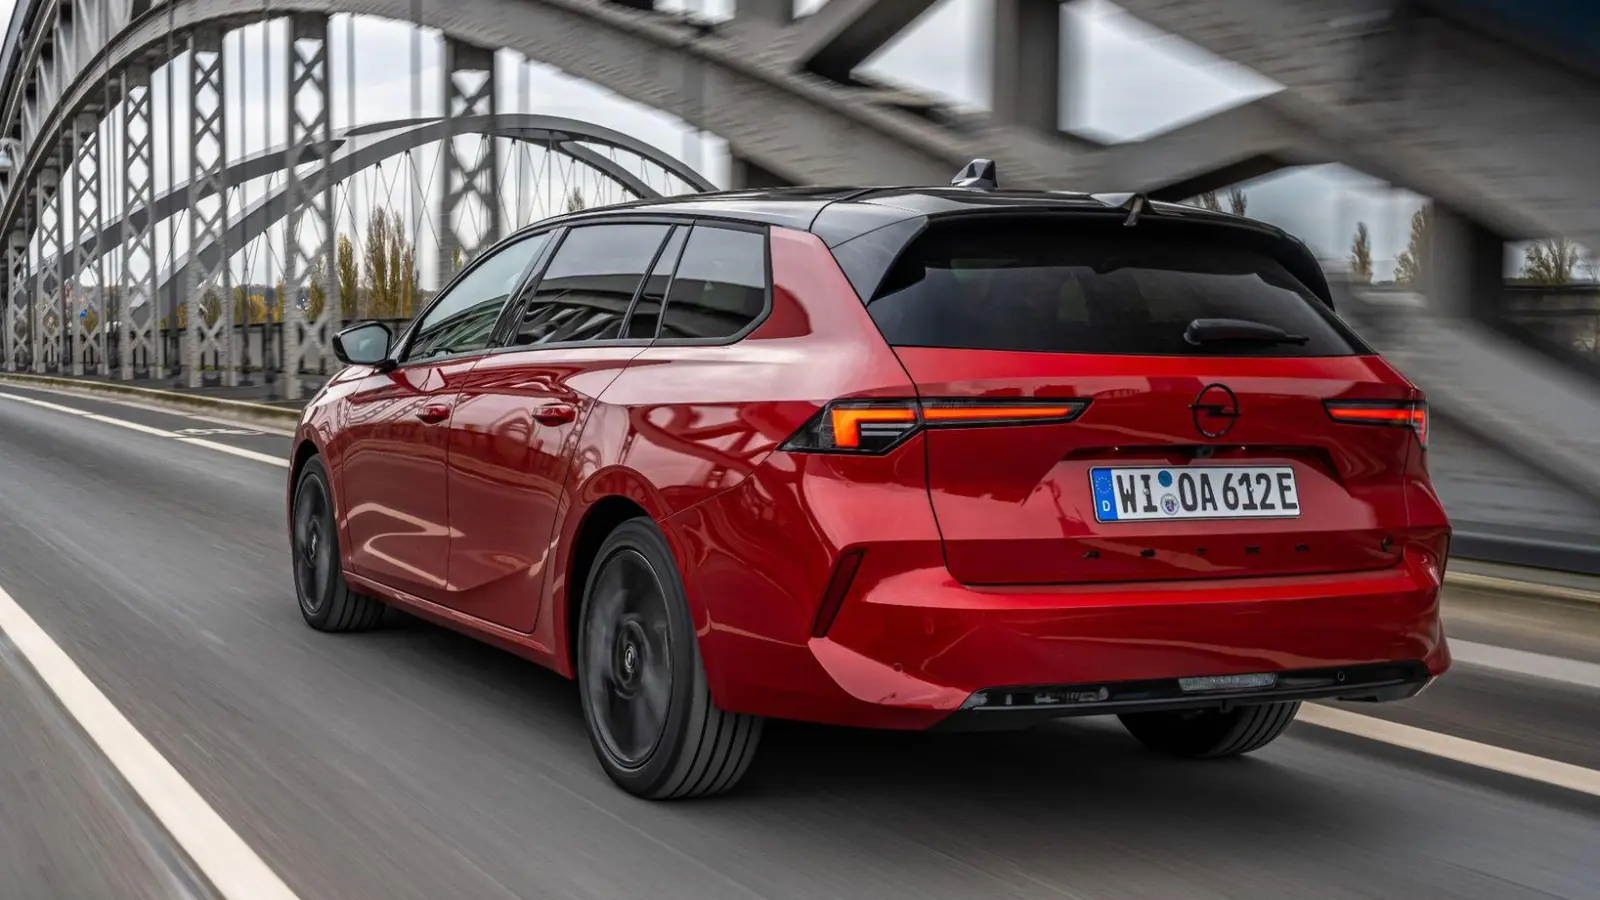 Opel bietet den Astra Sports Tourer nun auch als Elektroversion an mit einer Reichweite von bis 413 km laut Testnorm. (Foto: Opel Automobile GmbH/dpa-tmn)